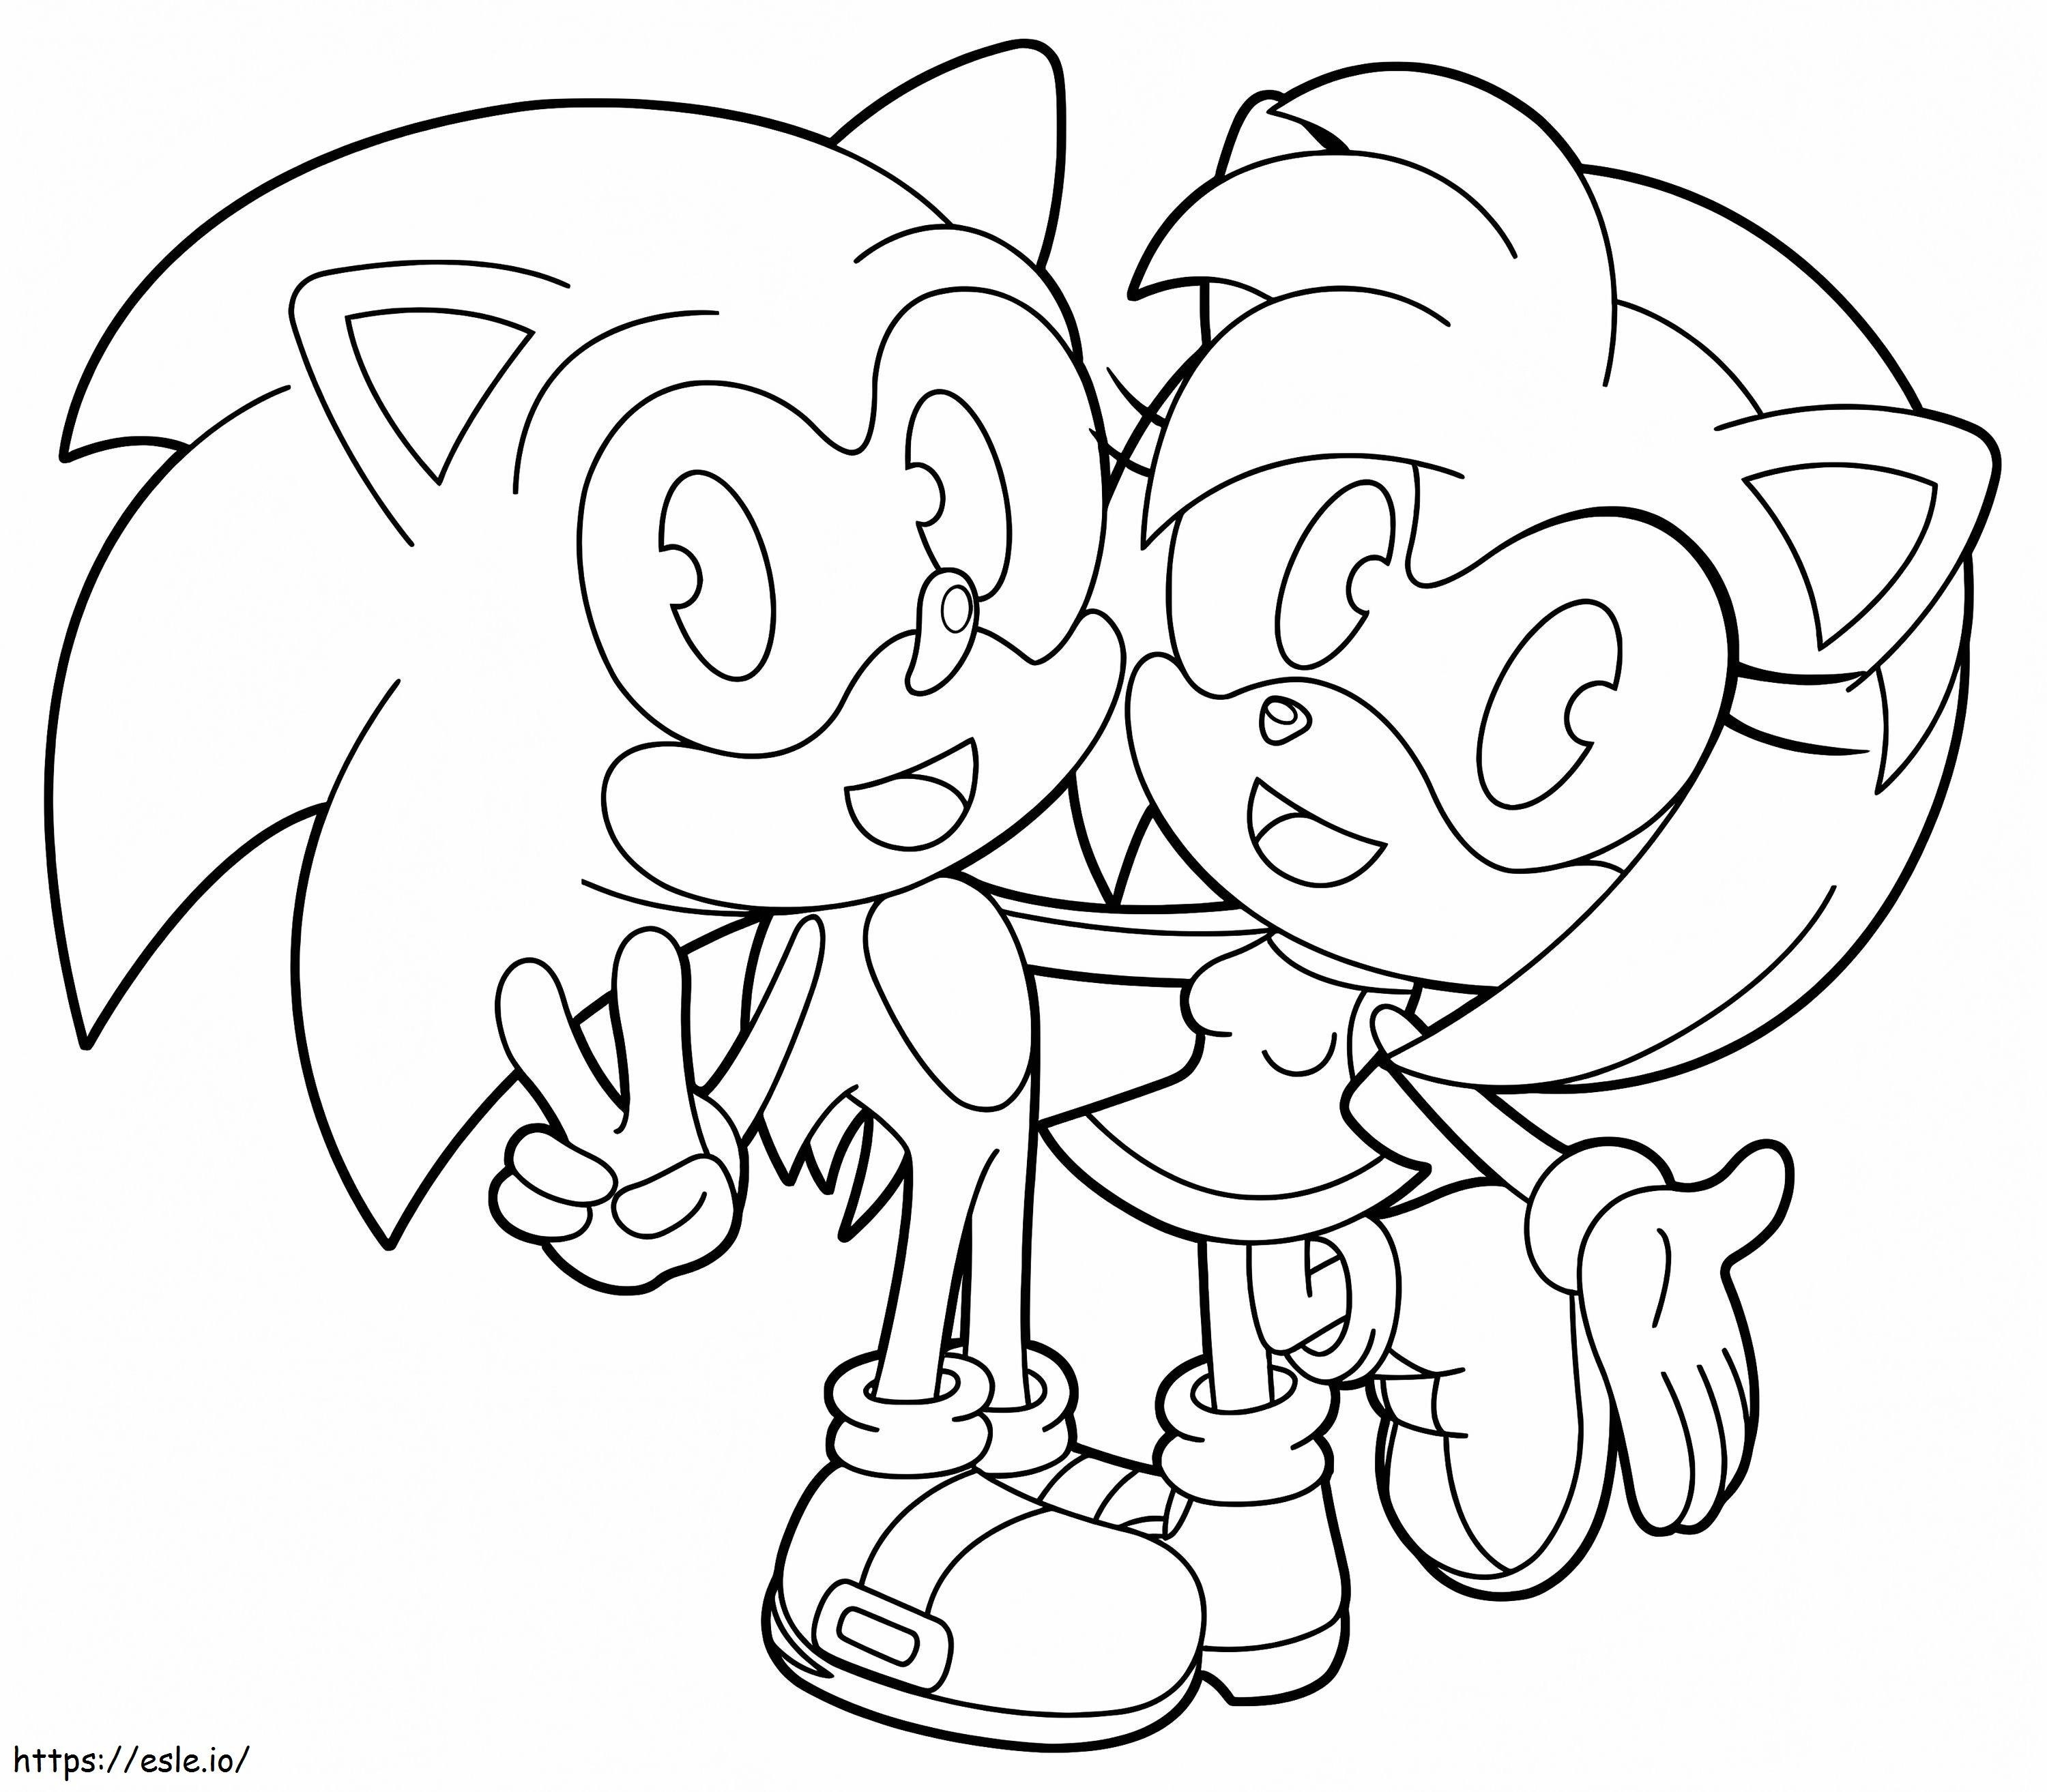 Amy Rose és Sonic kifestő